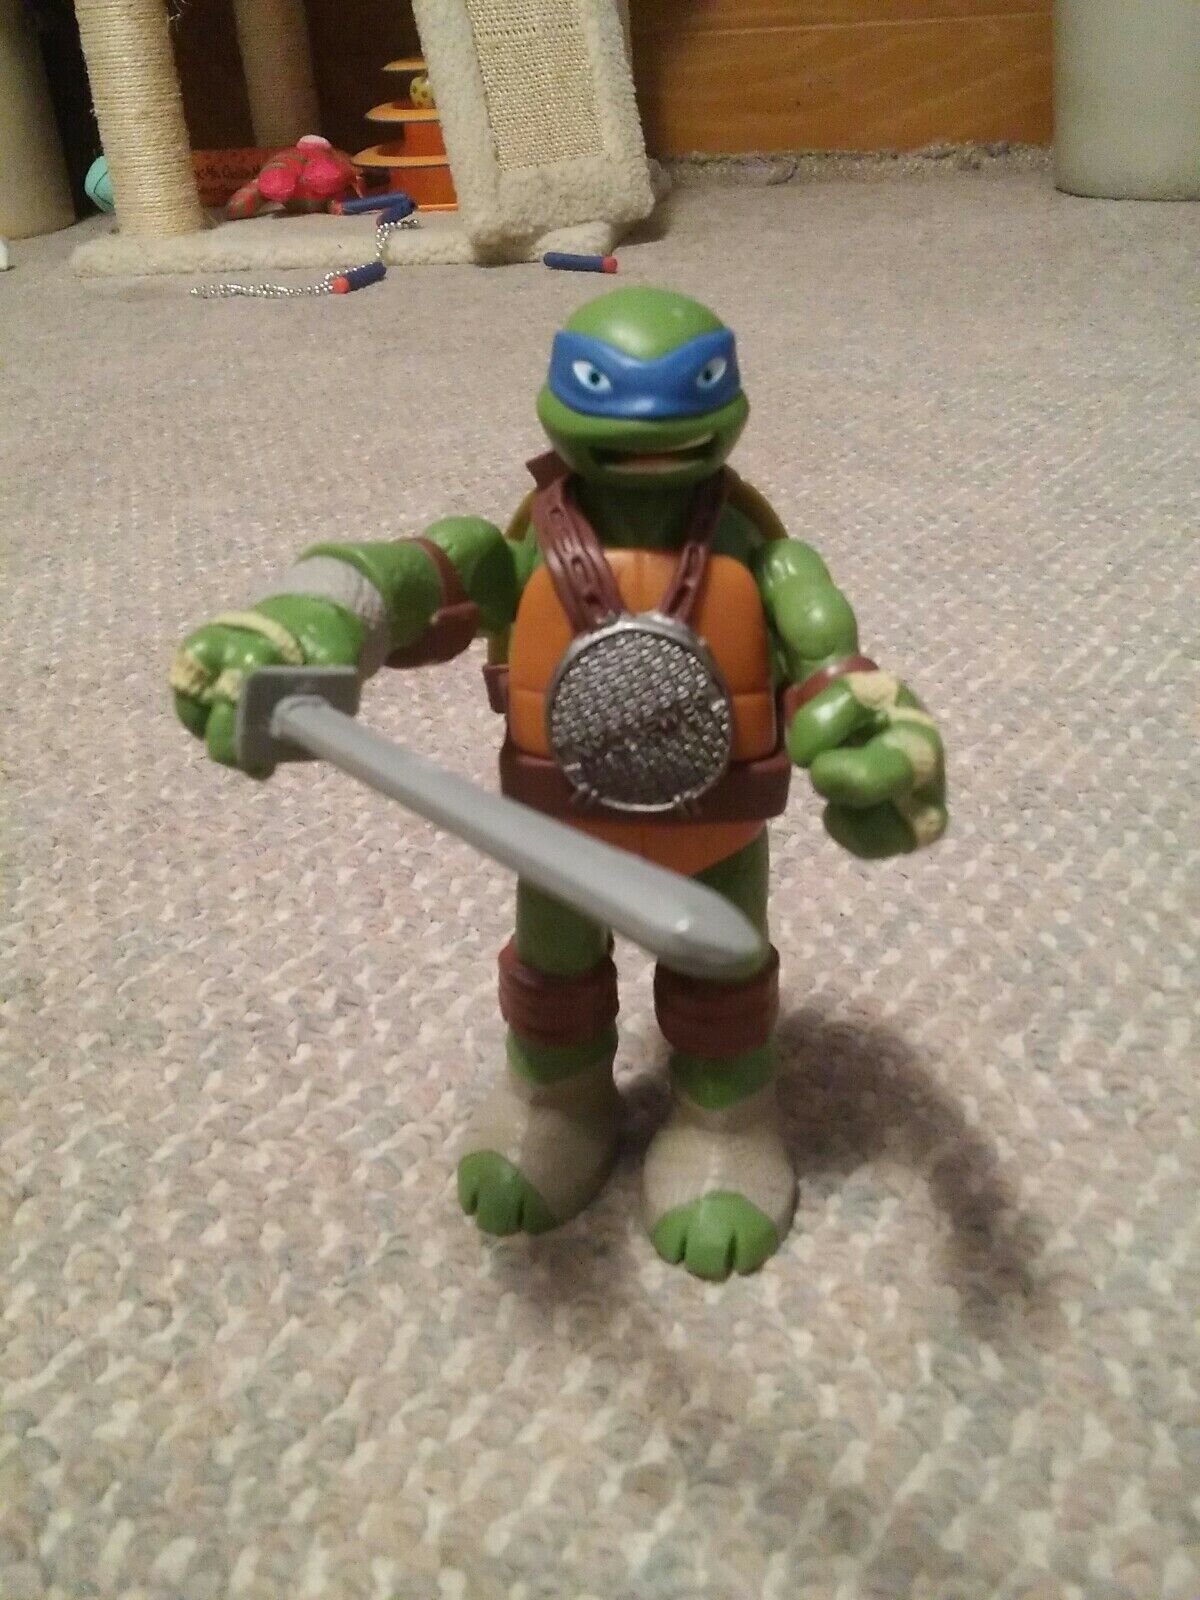 Playmates Viacom Teenage Mutant Ninja Turtles TMNT Leonardo 2012